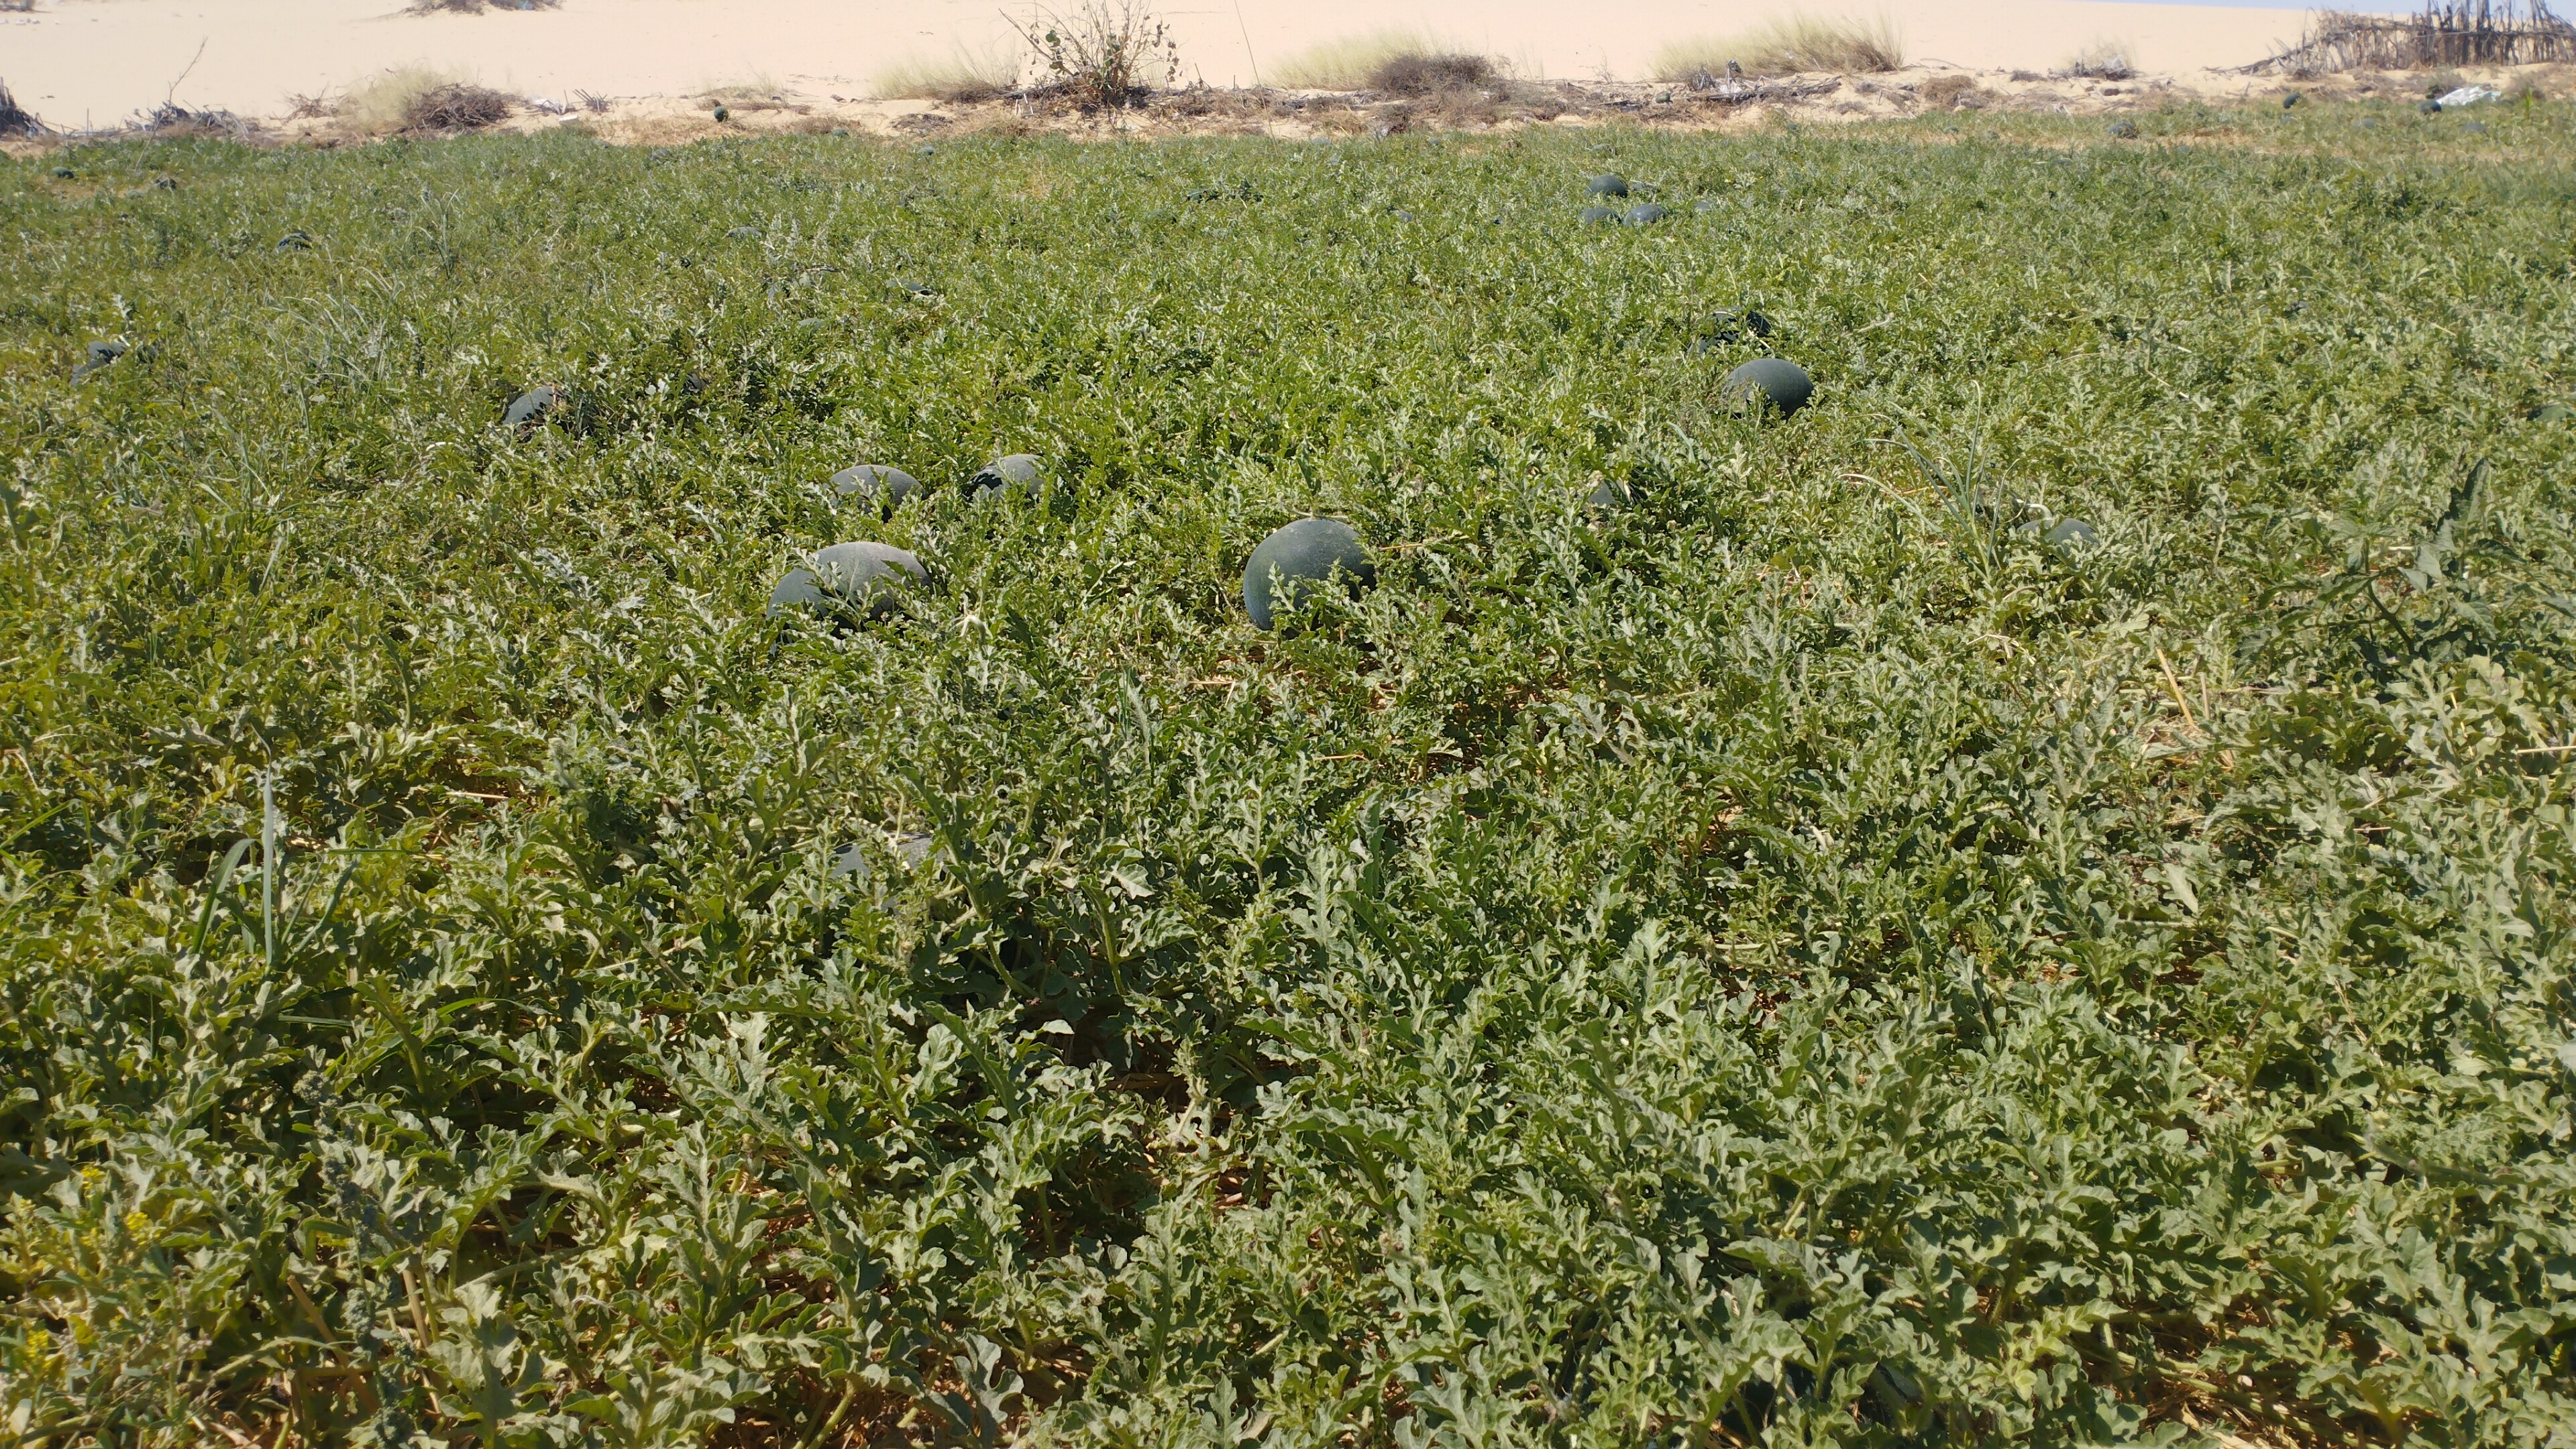  مزارع البطيخ بمحافظة المنيا (7)